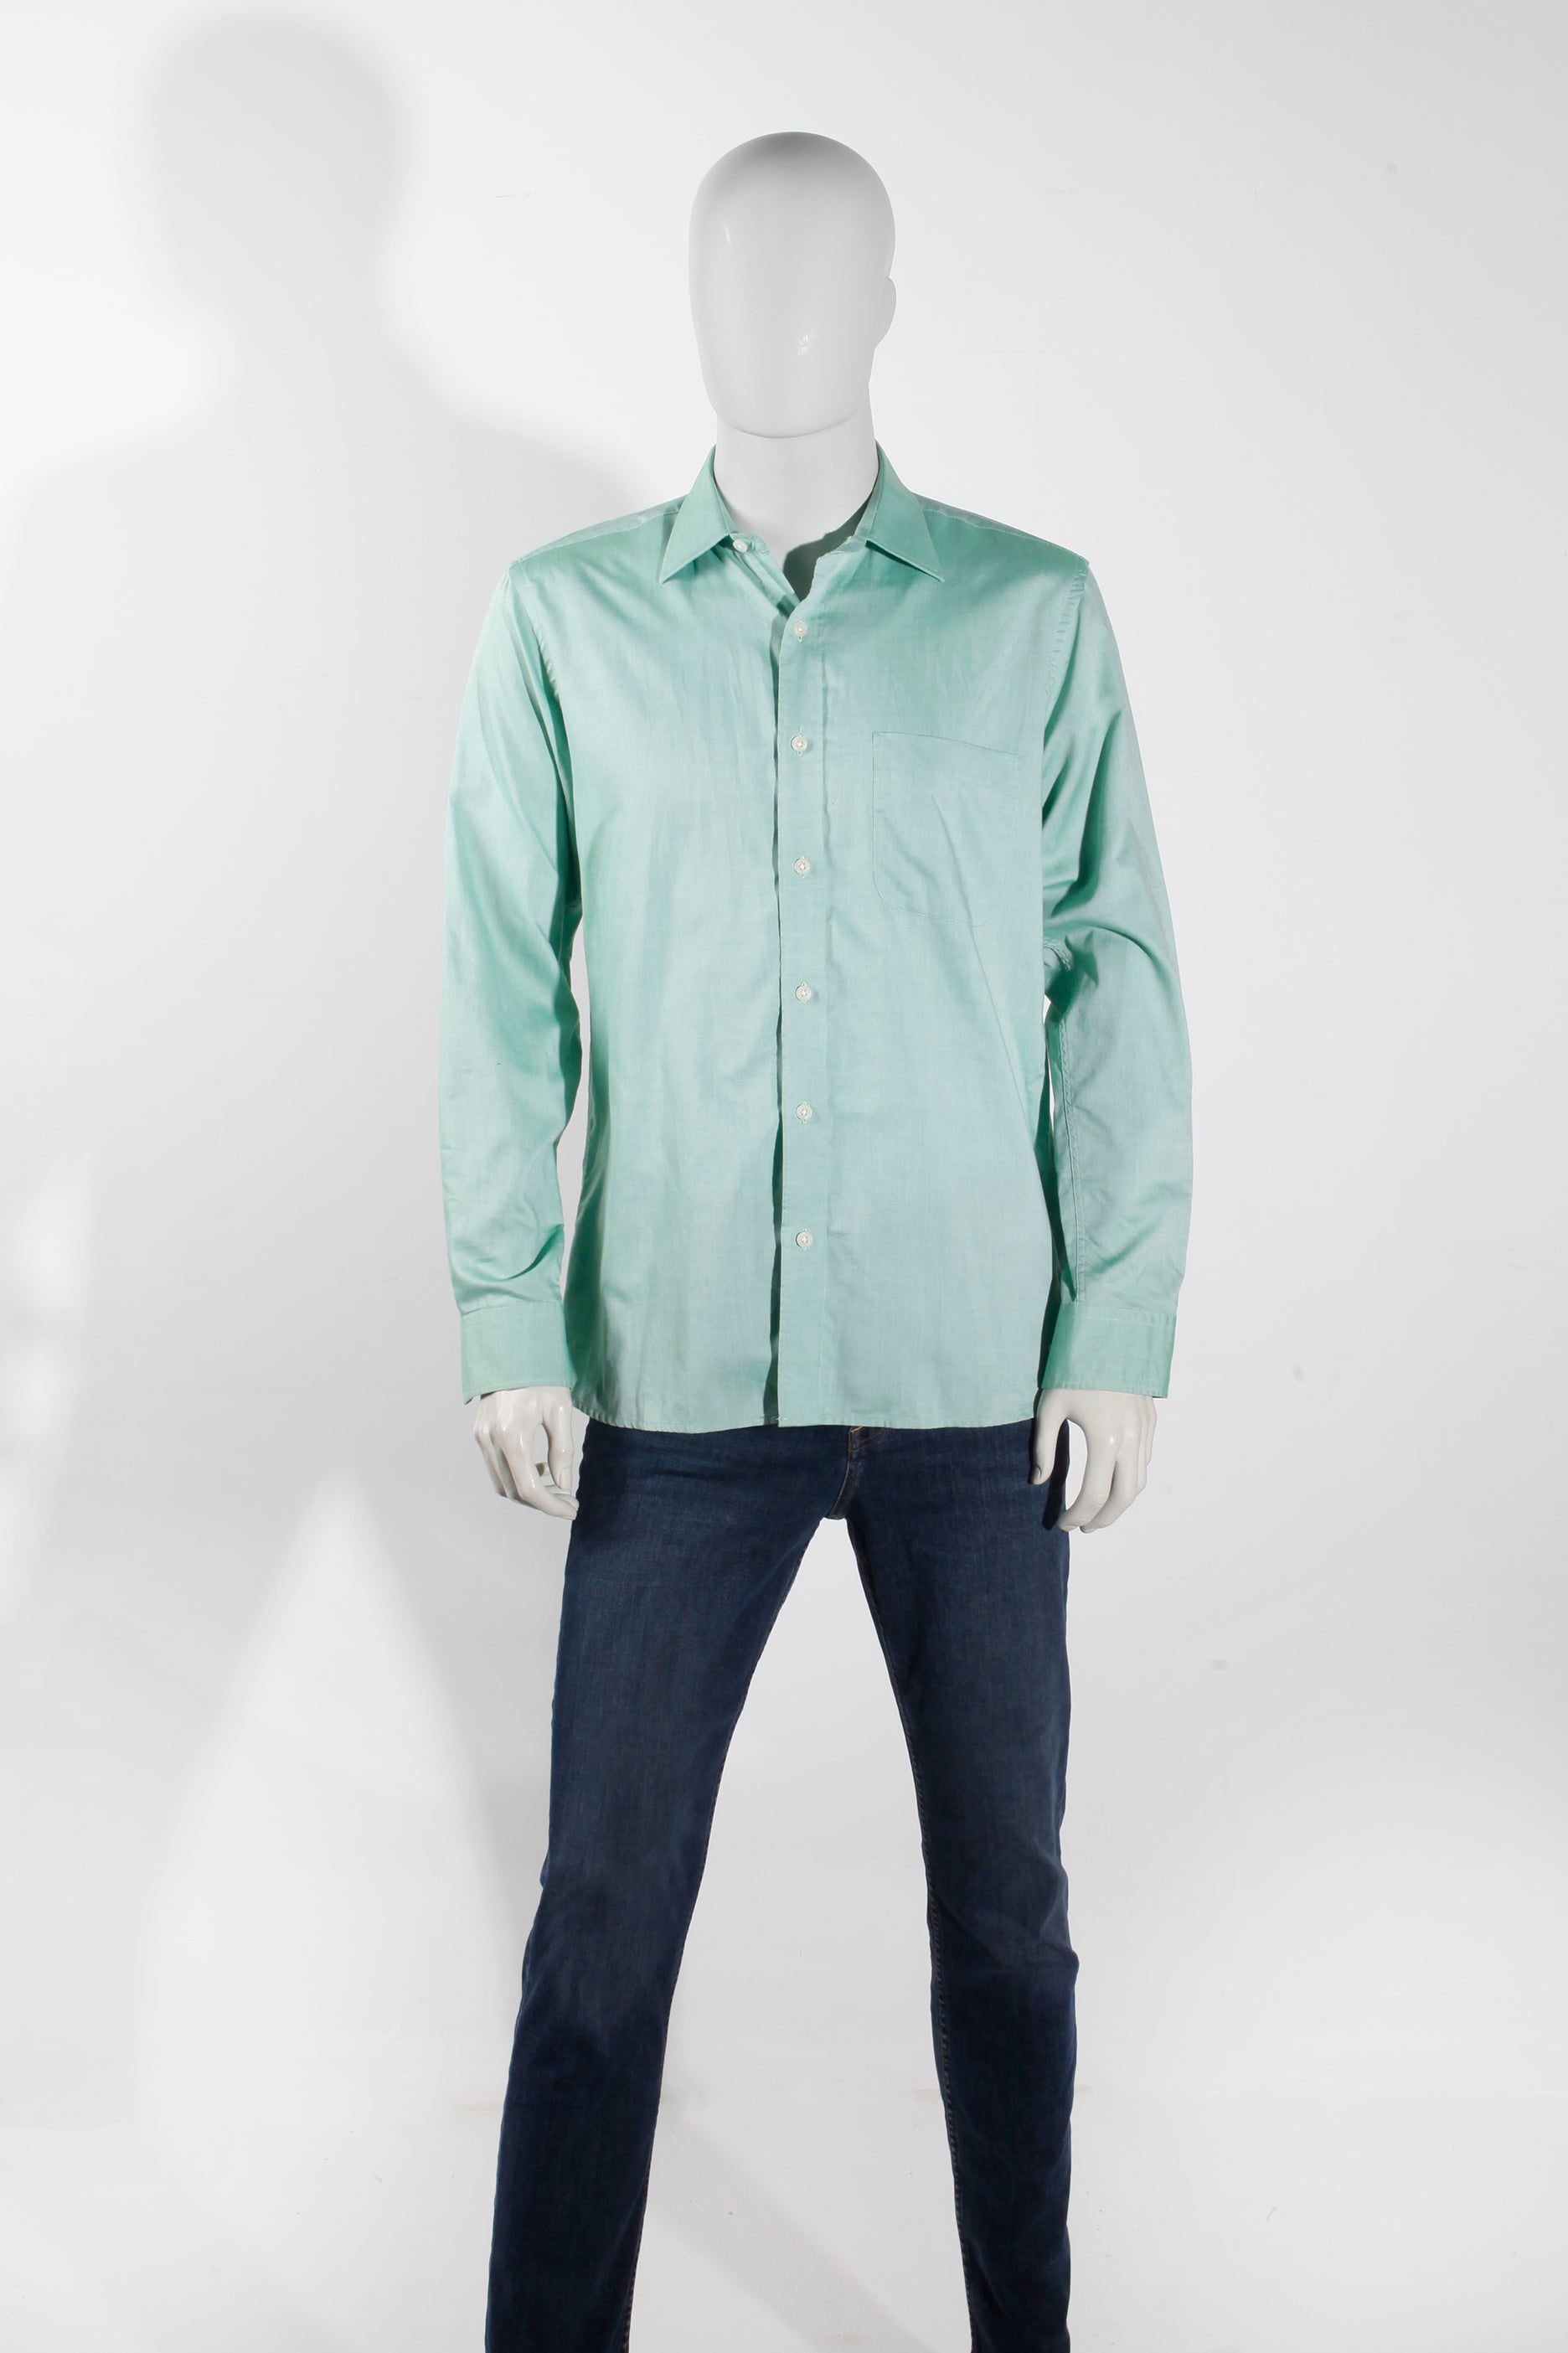 Men's Light Green Shirt (Medium)